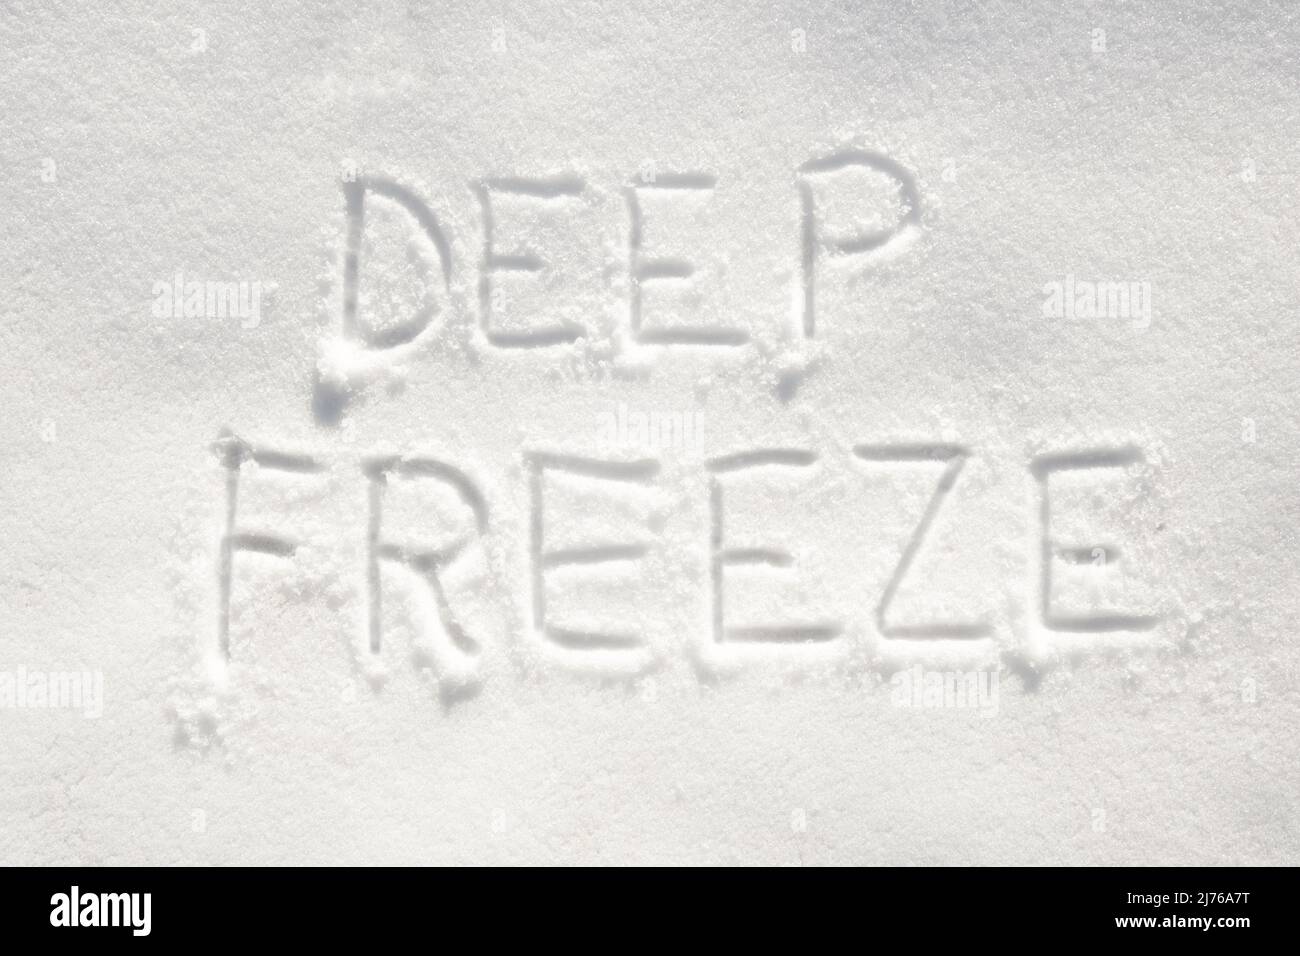 Testo 'deep freeze' scritto nella neve; concetto di arrivo molto freddo Foto Stock